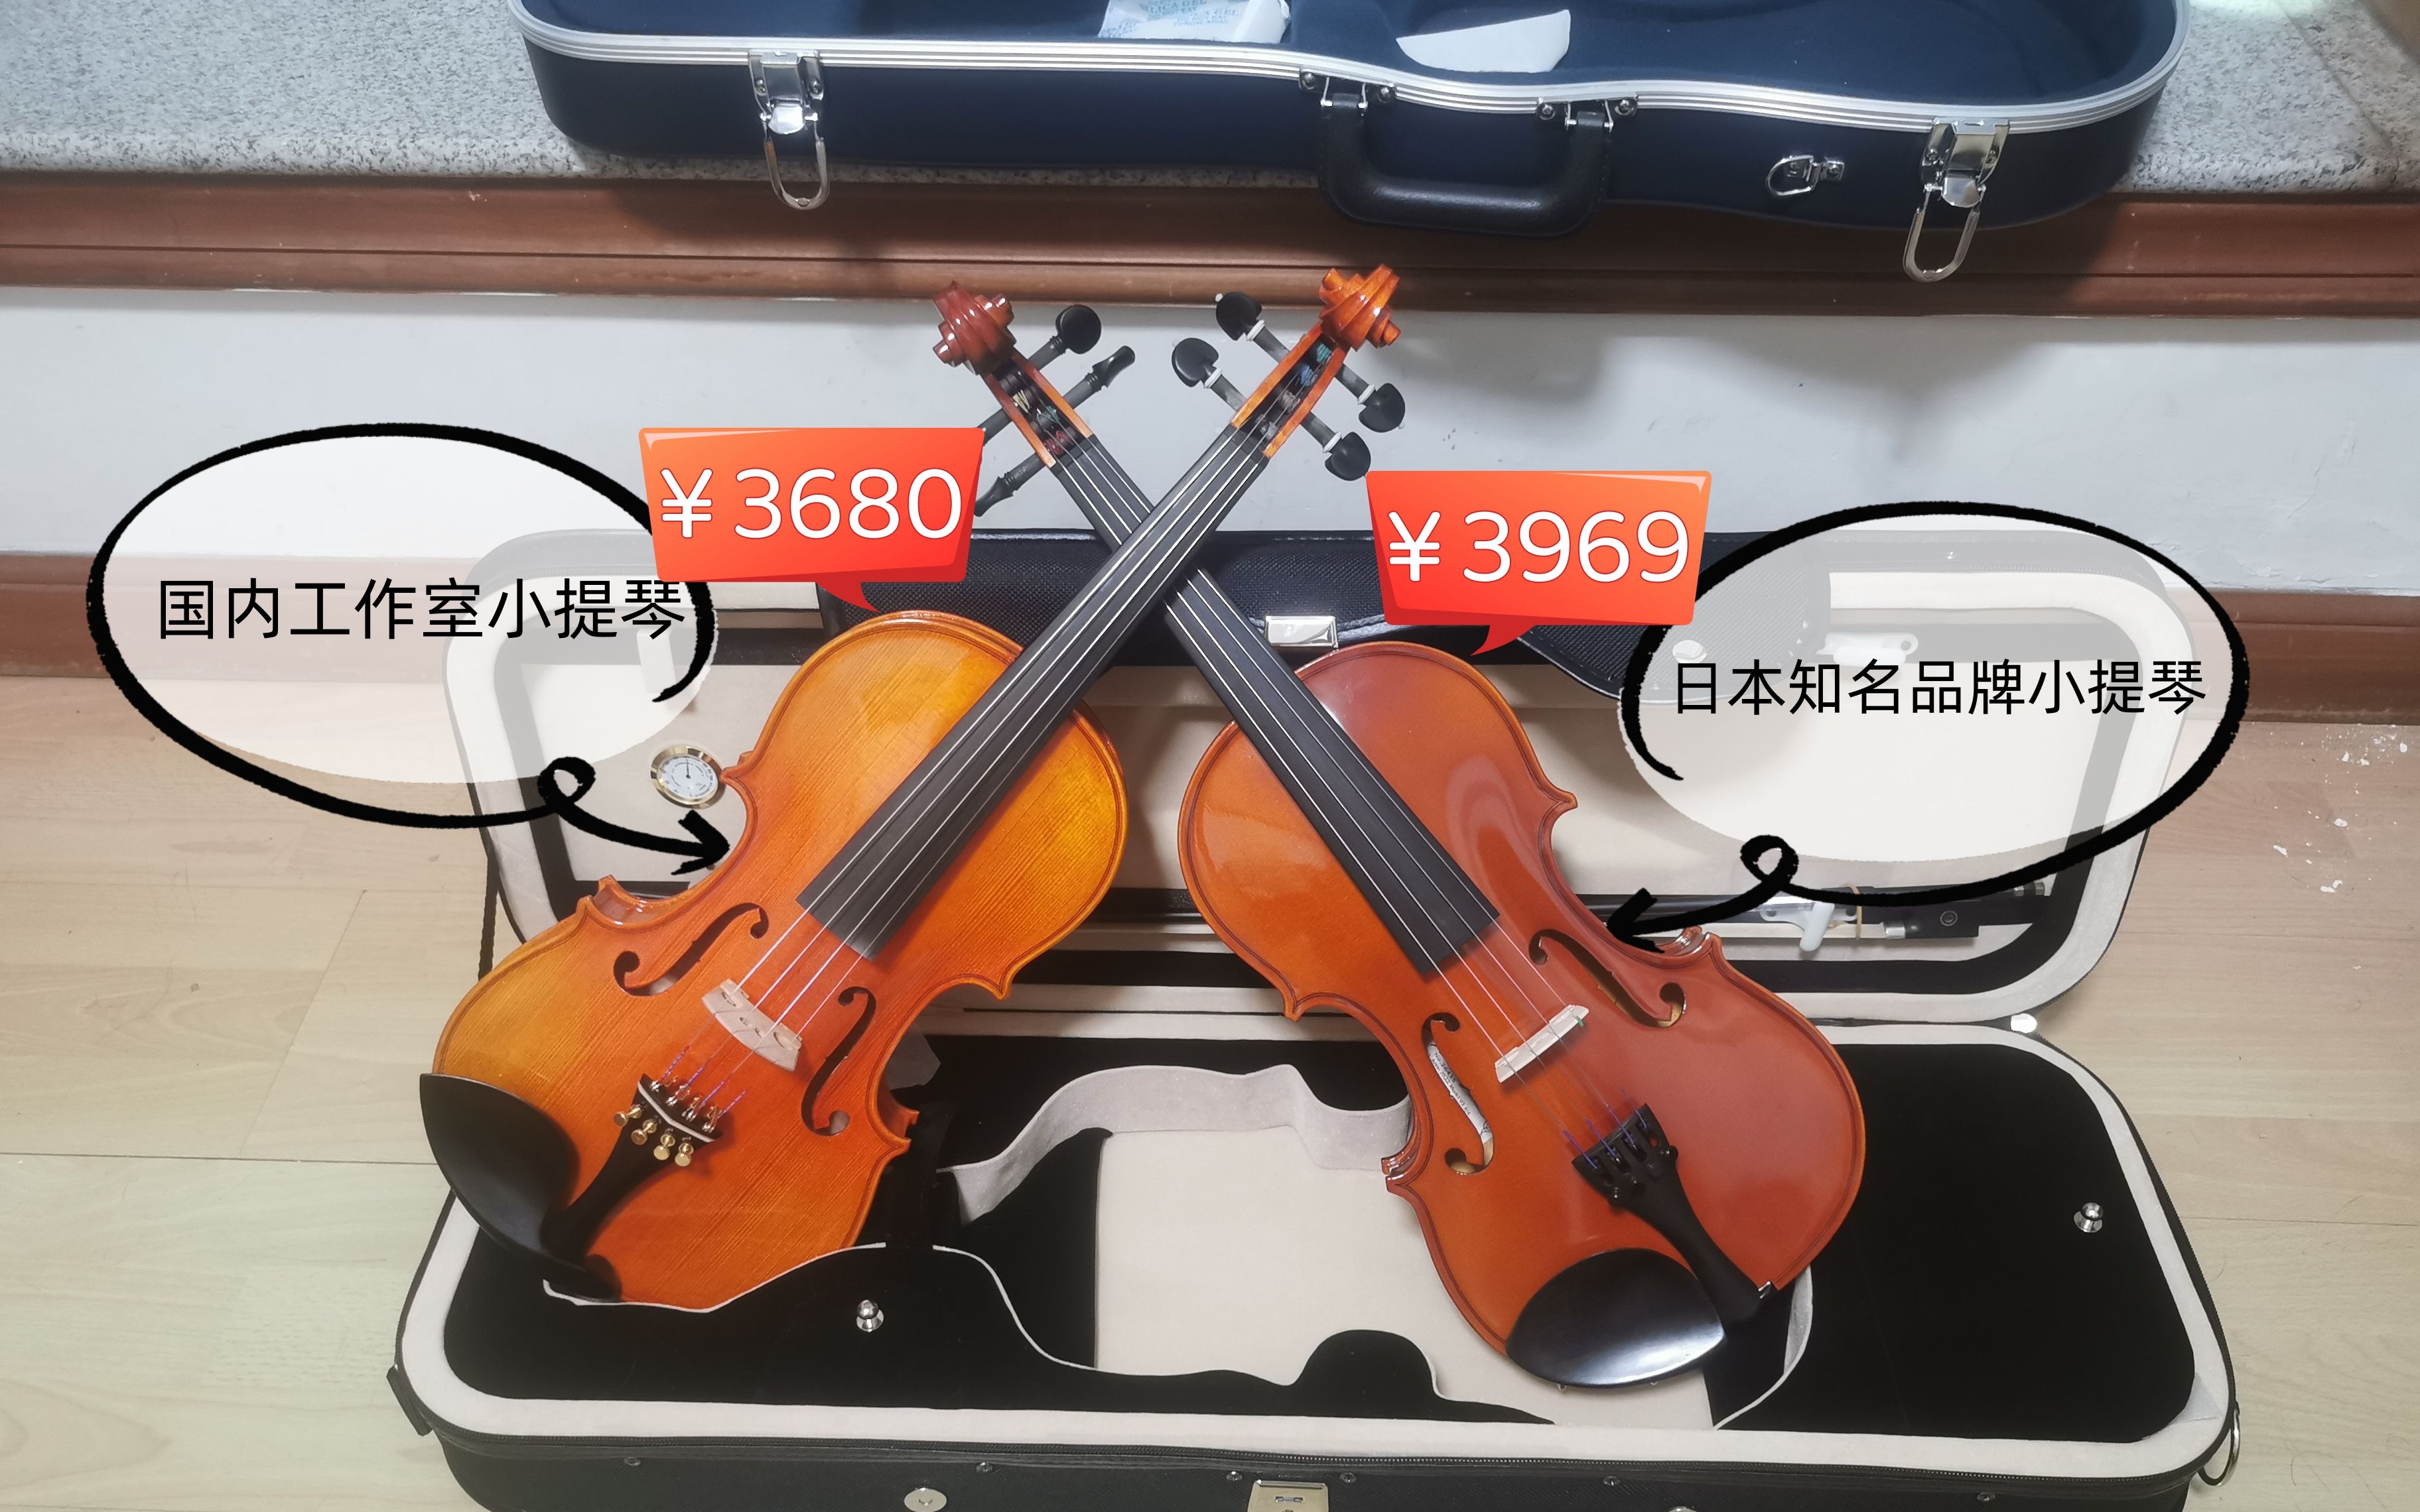 小提琴开箱&测评(Vol.4)——知名日本乐器品牌的初级琴是否物有所值？我终于找到音色不会让我嫌弃的琴了？内附试音/零散干货